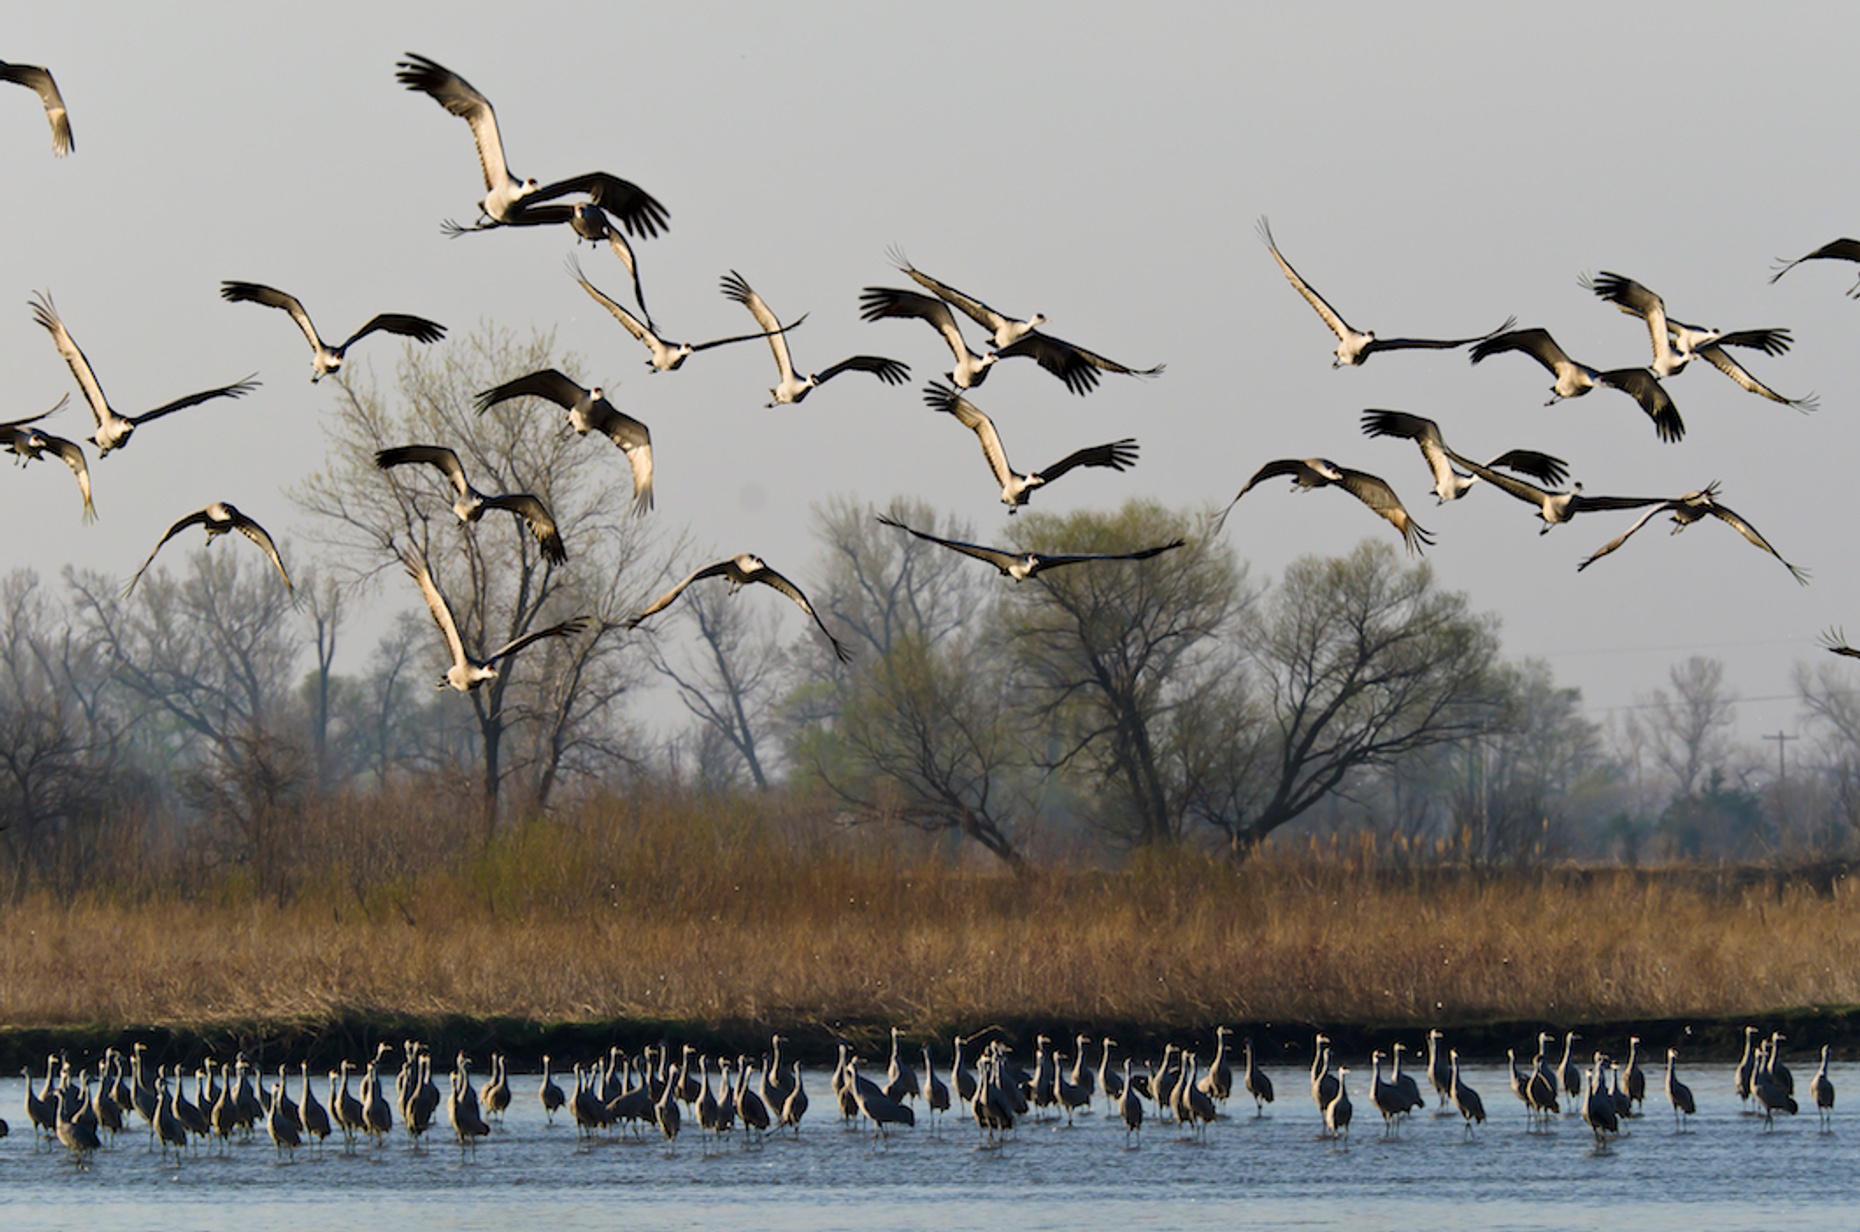 Morning Platte River Birding Tour